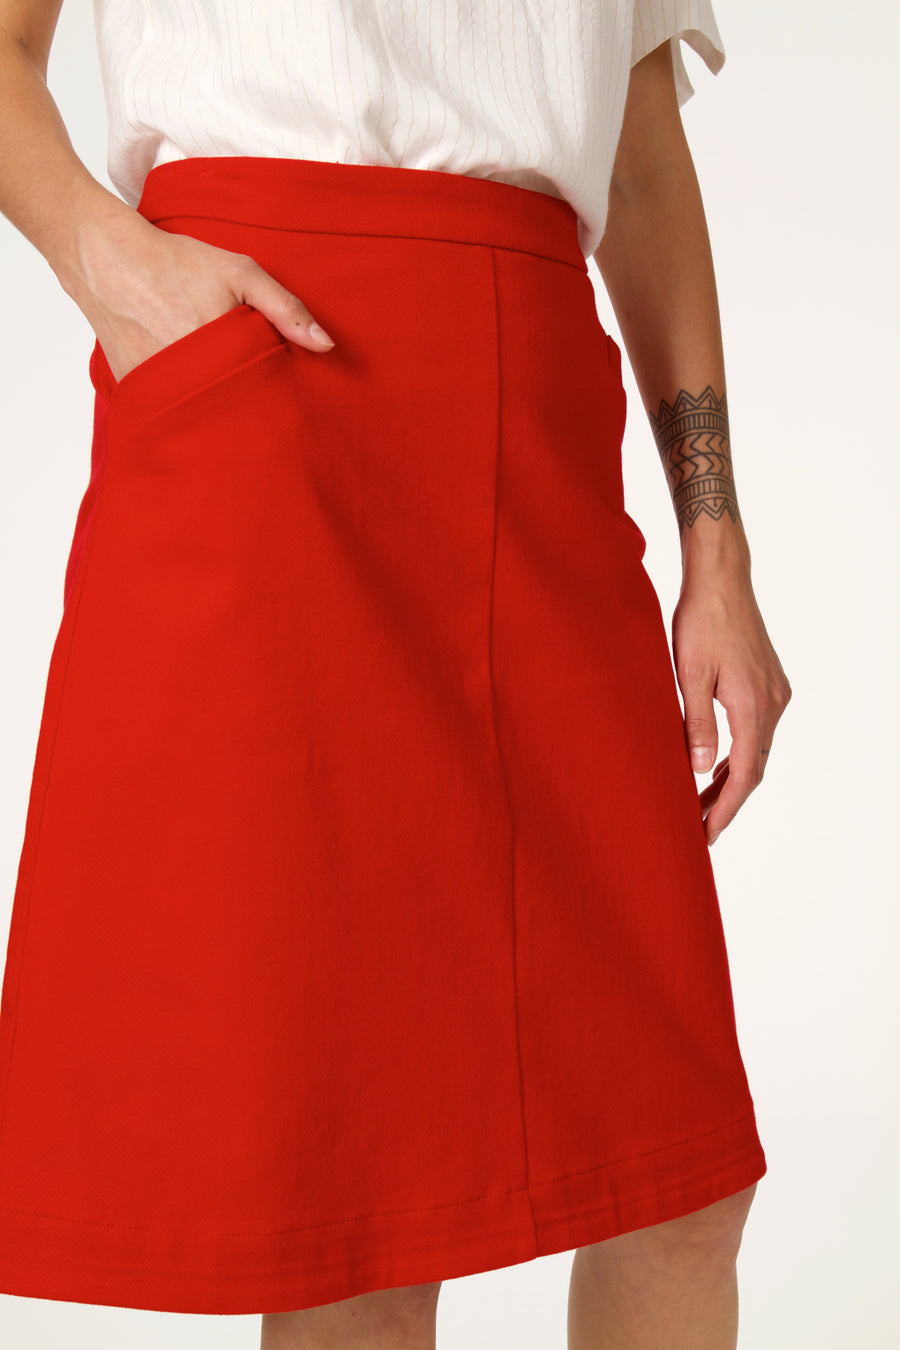 SALOUEN Red Skirt